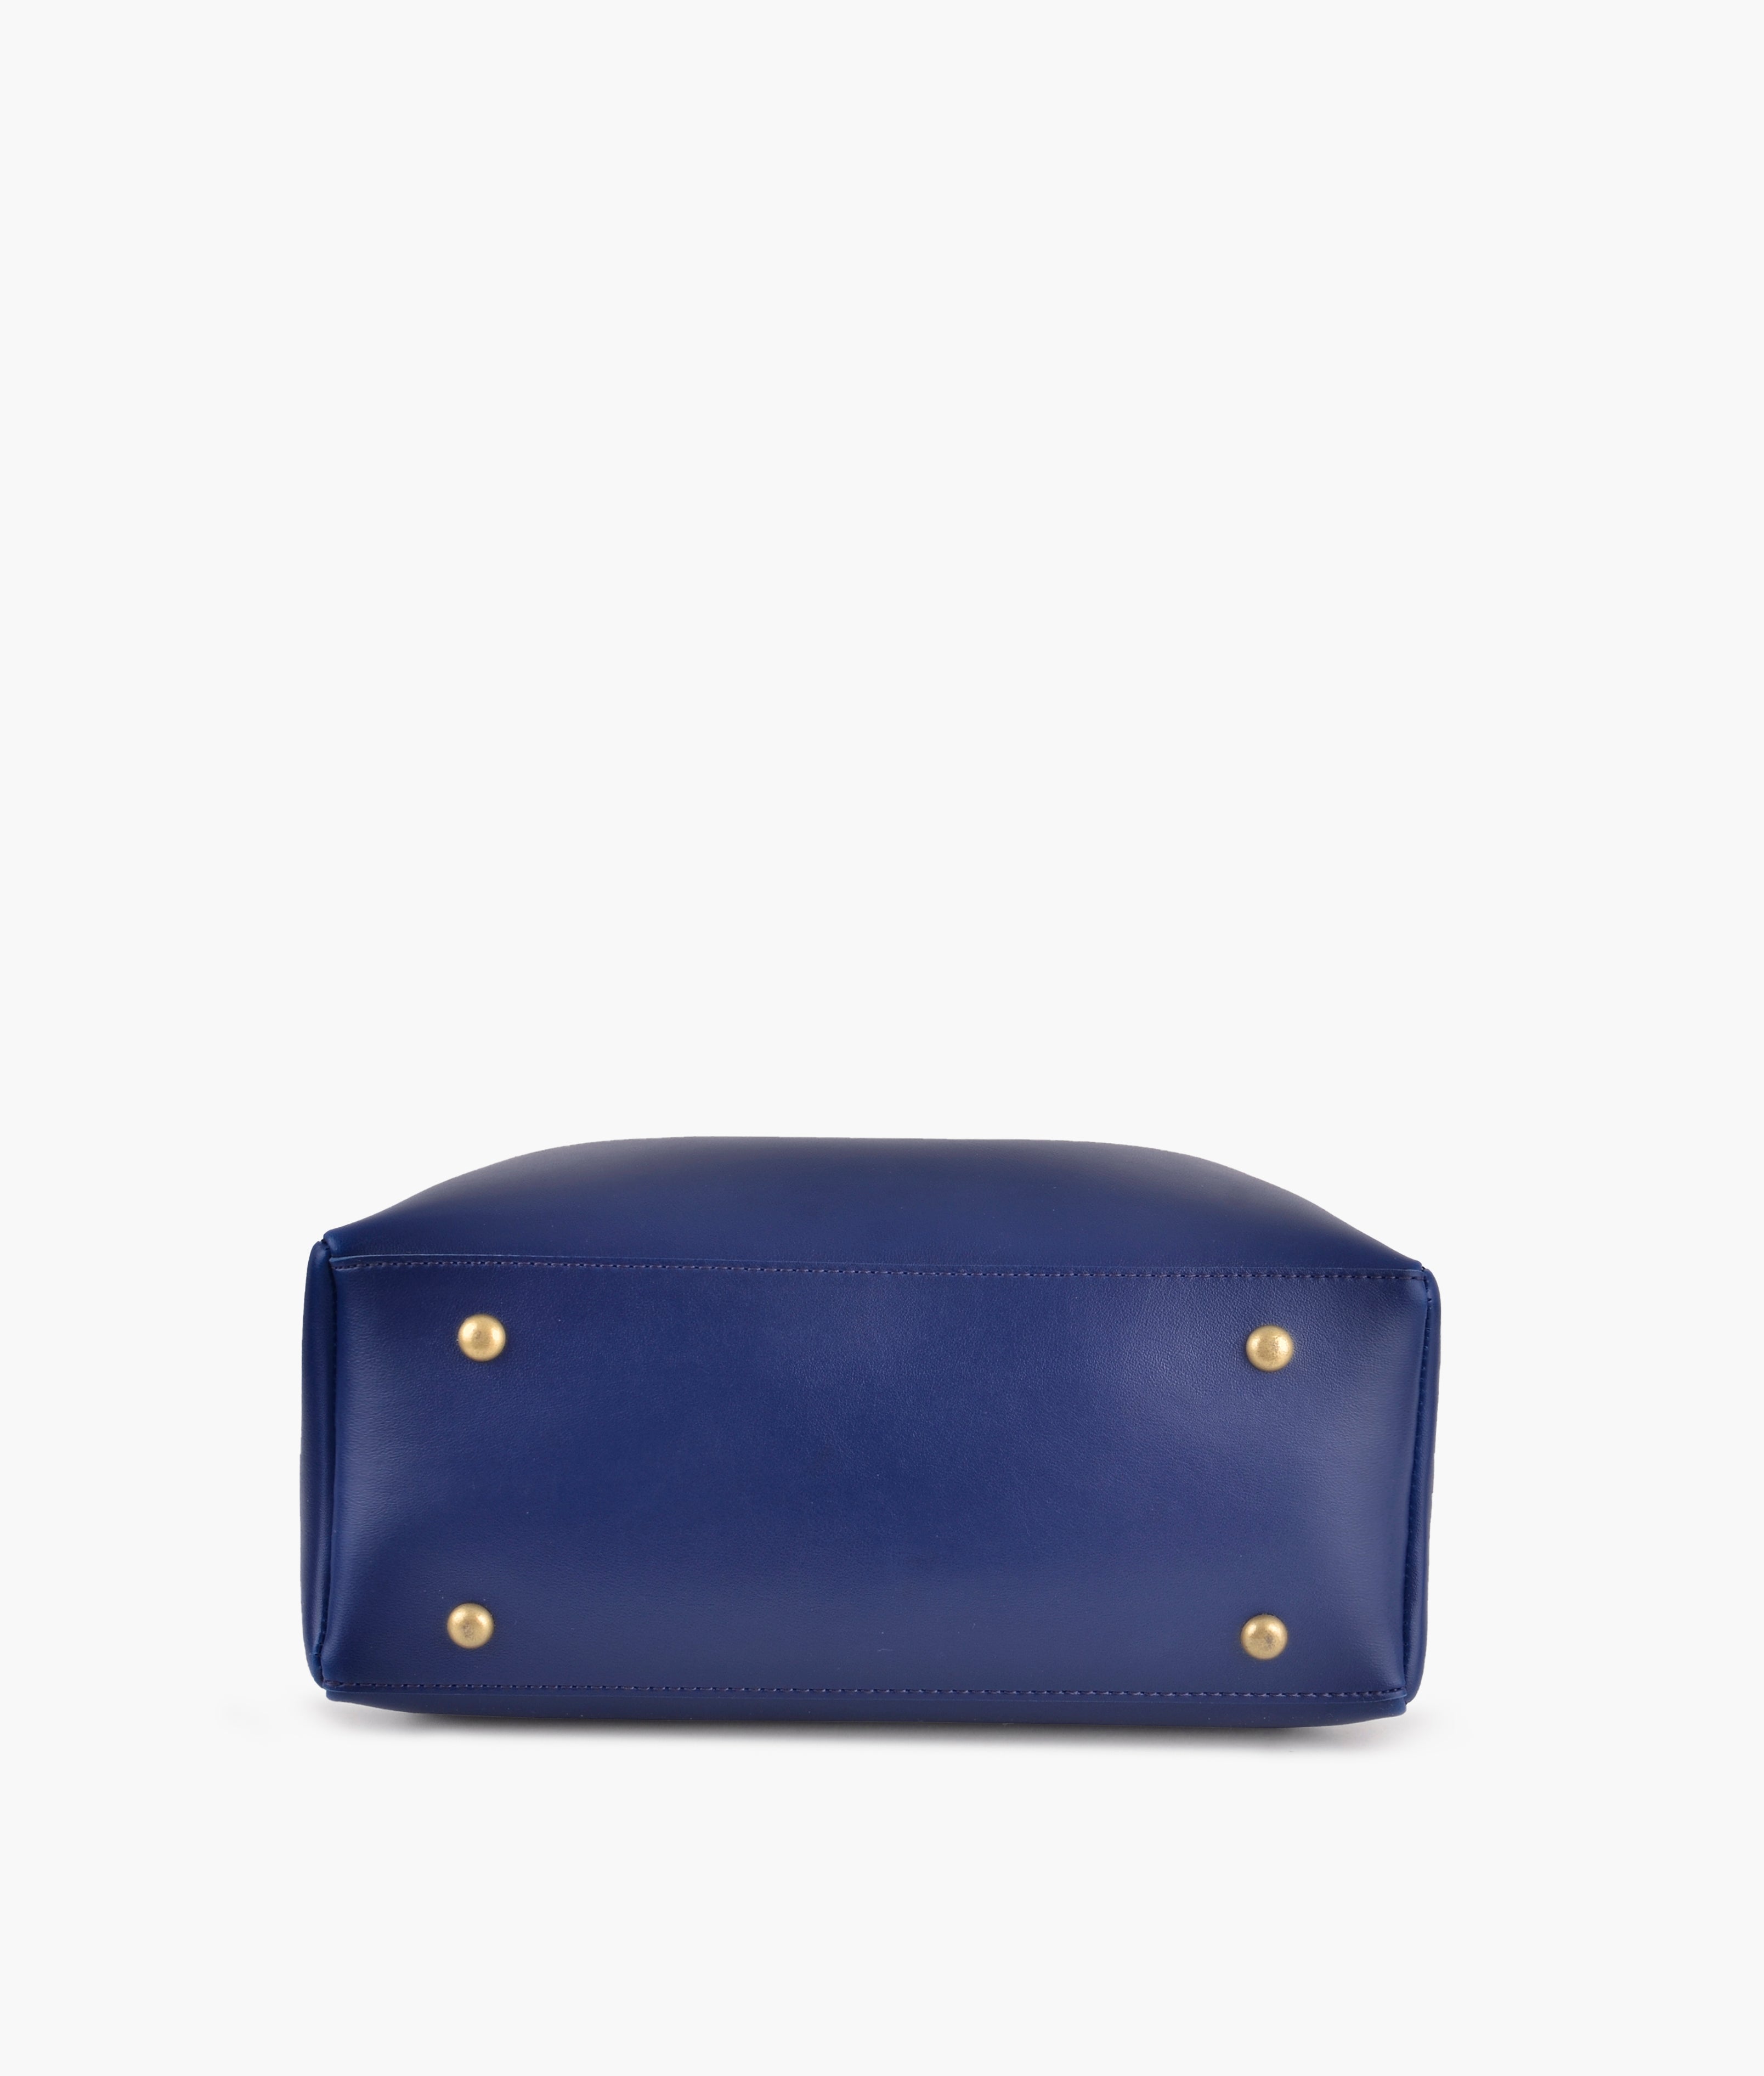 Blue mini bag